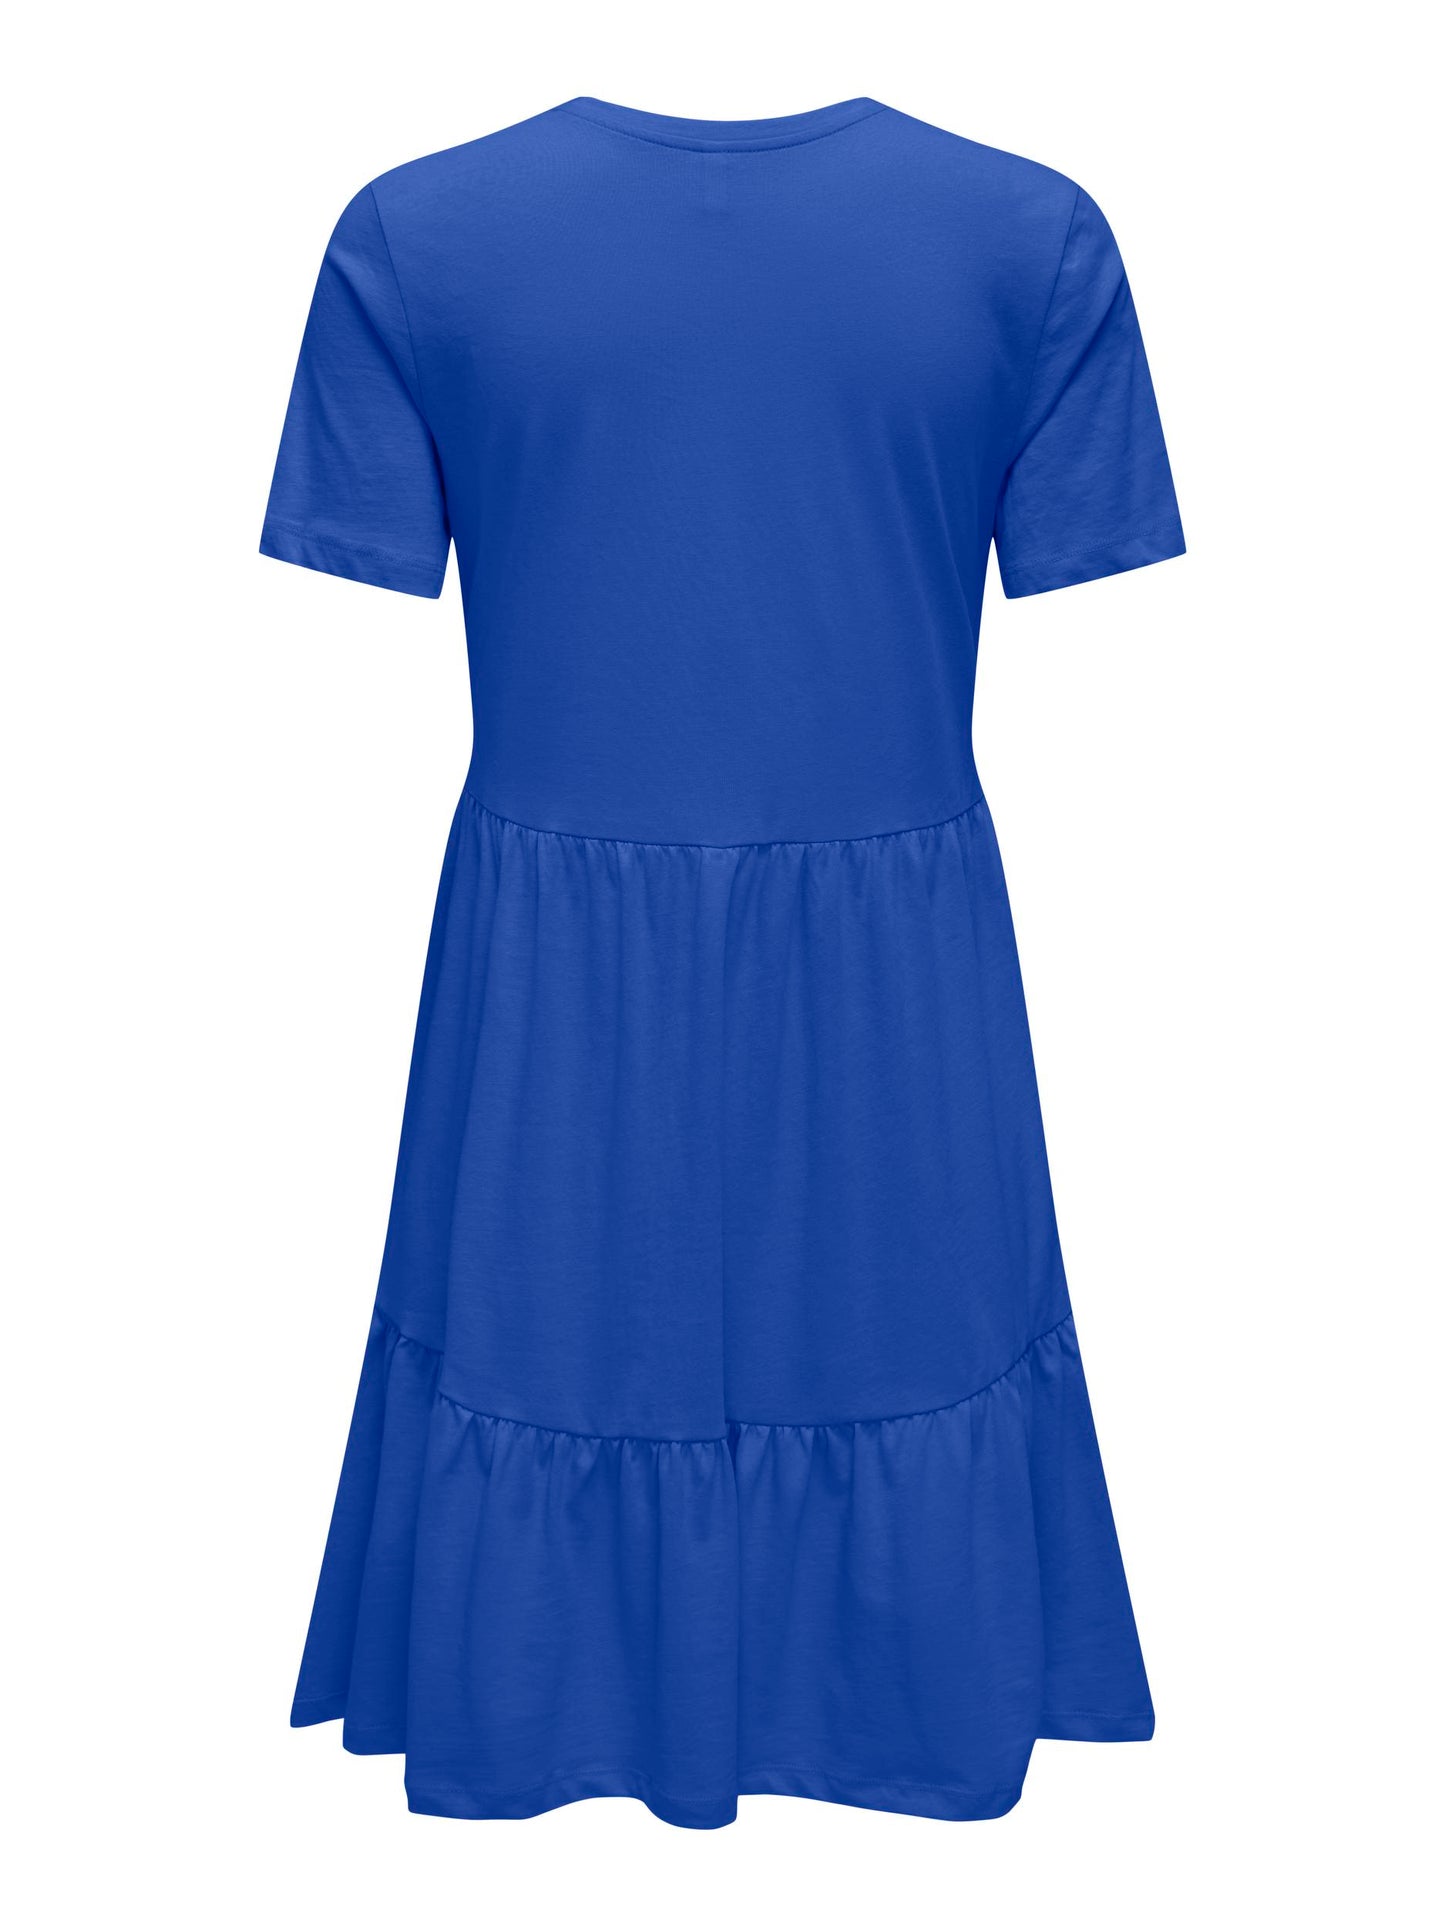 Blue cotton dress